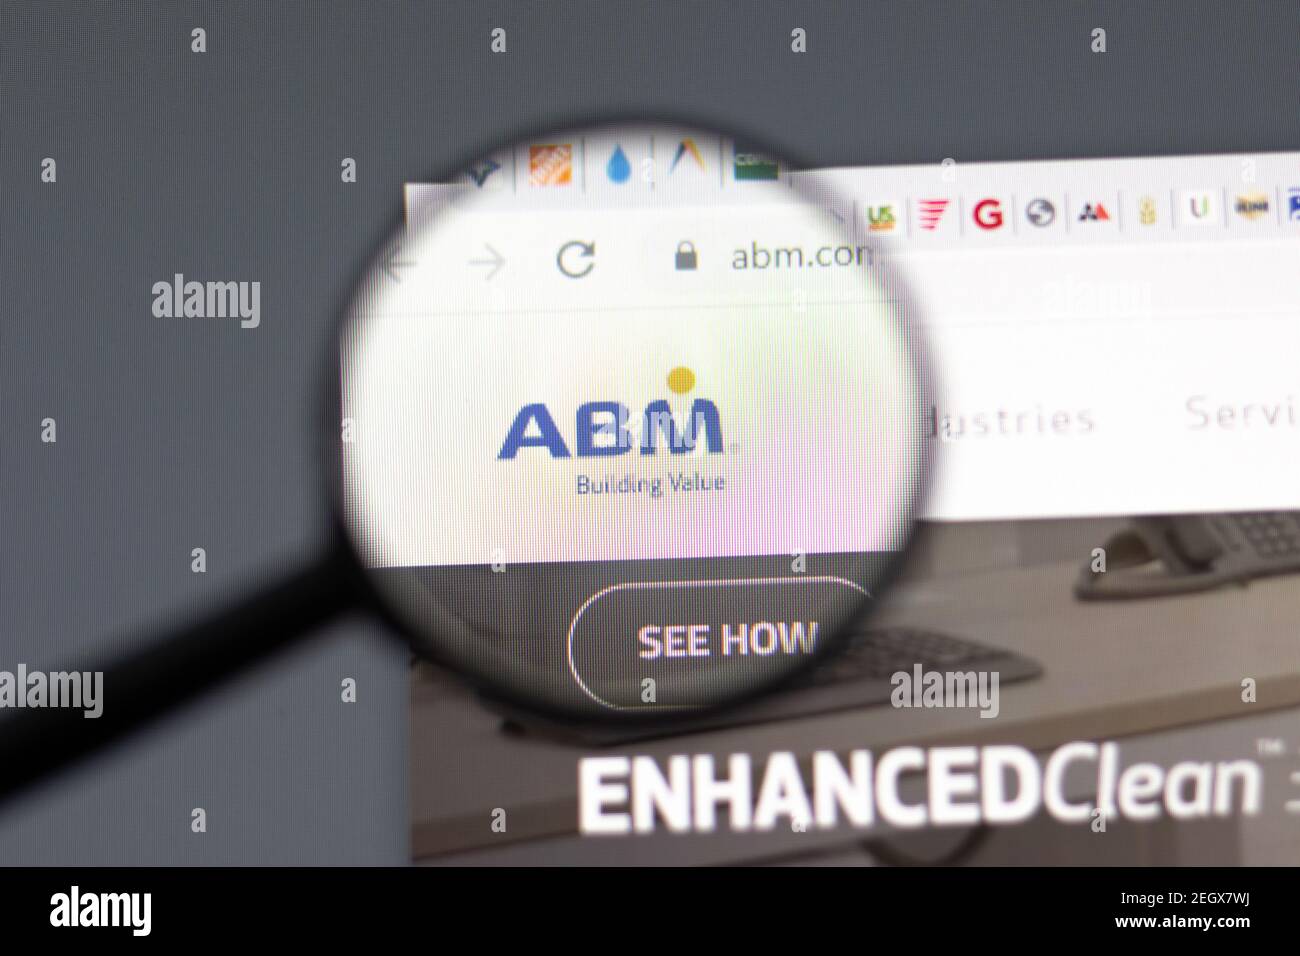 New York, USA - 15 Febbraio 2021: ABM Industries sito web in browser con logo aziendale, editoriale illustrativo Foto Stock